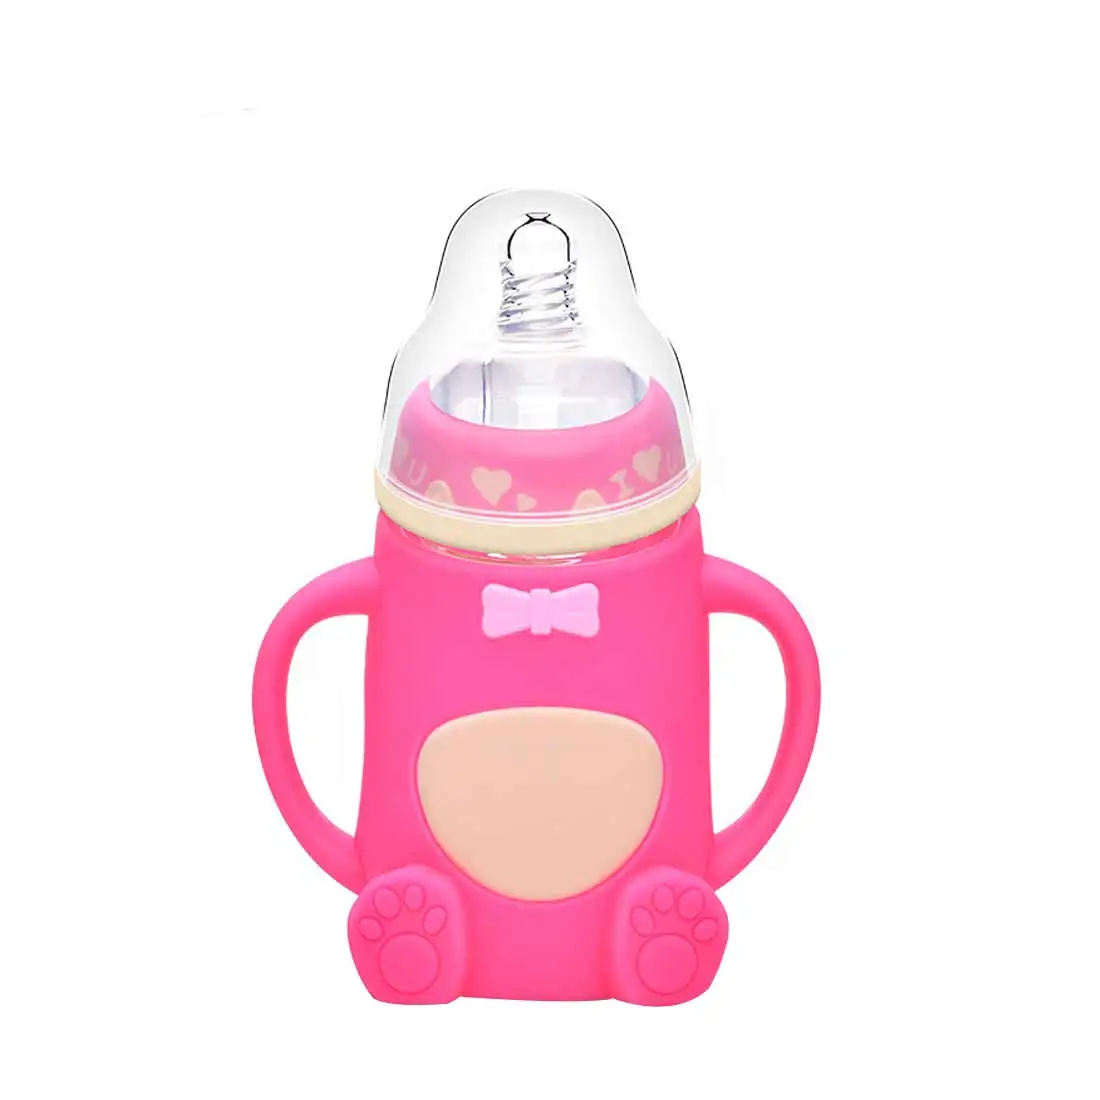 Милый, для новорожденных и малышей кормления Стекло бутылка силикон, безопасный для ребенка молочная бутылка с ручкой мягкий рот новорожденных Пейте обучение бутылочка для кормления - Цвет: 6